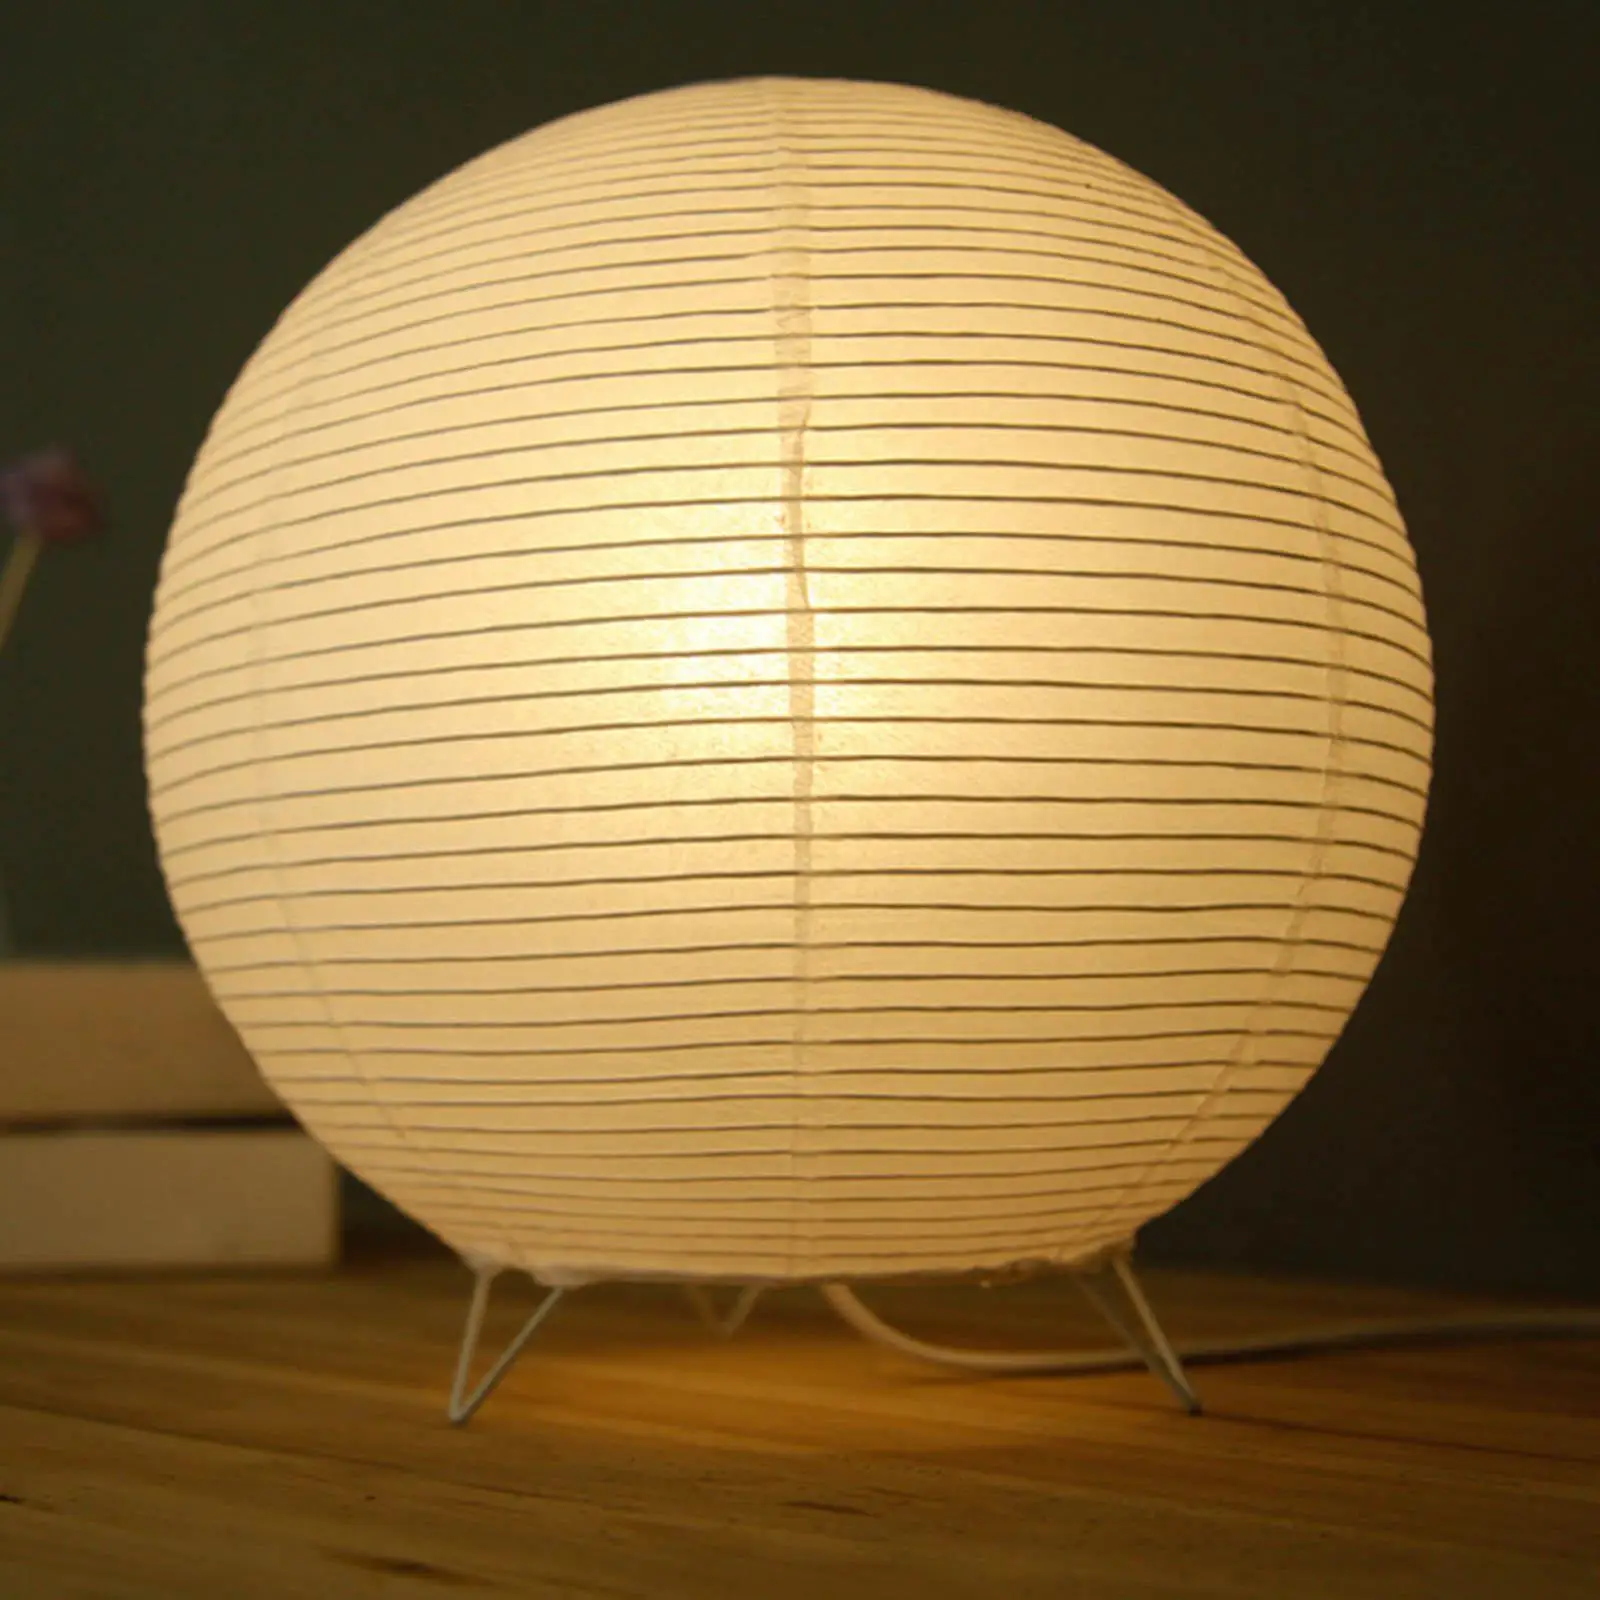 Paper Lantern Table Lamp Decorative Desk Light for Bedroom Bedside Living Room Decoration